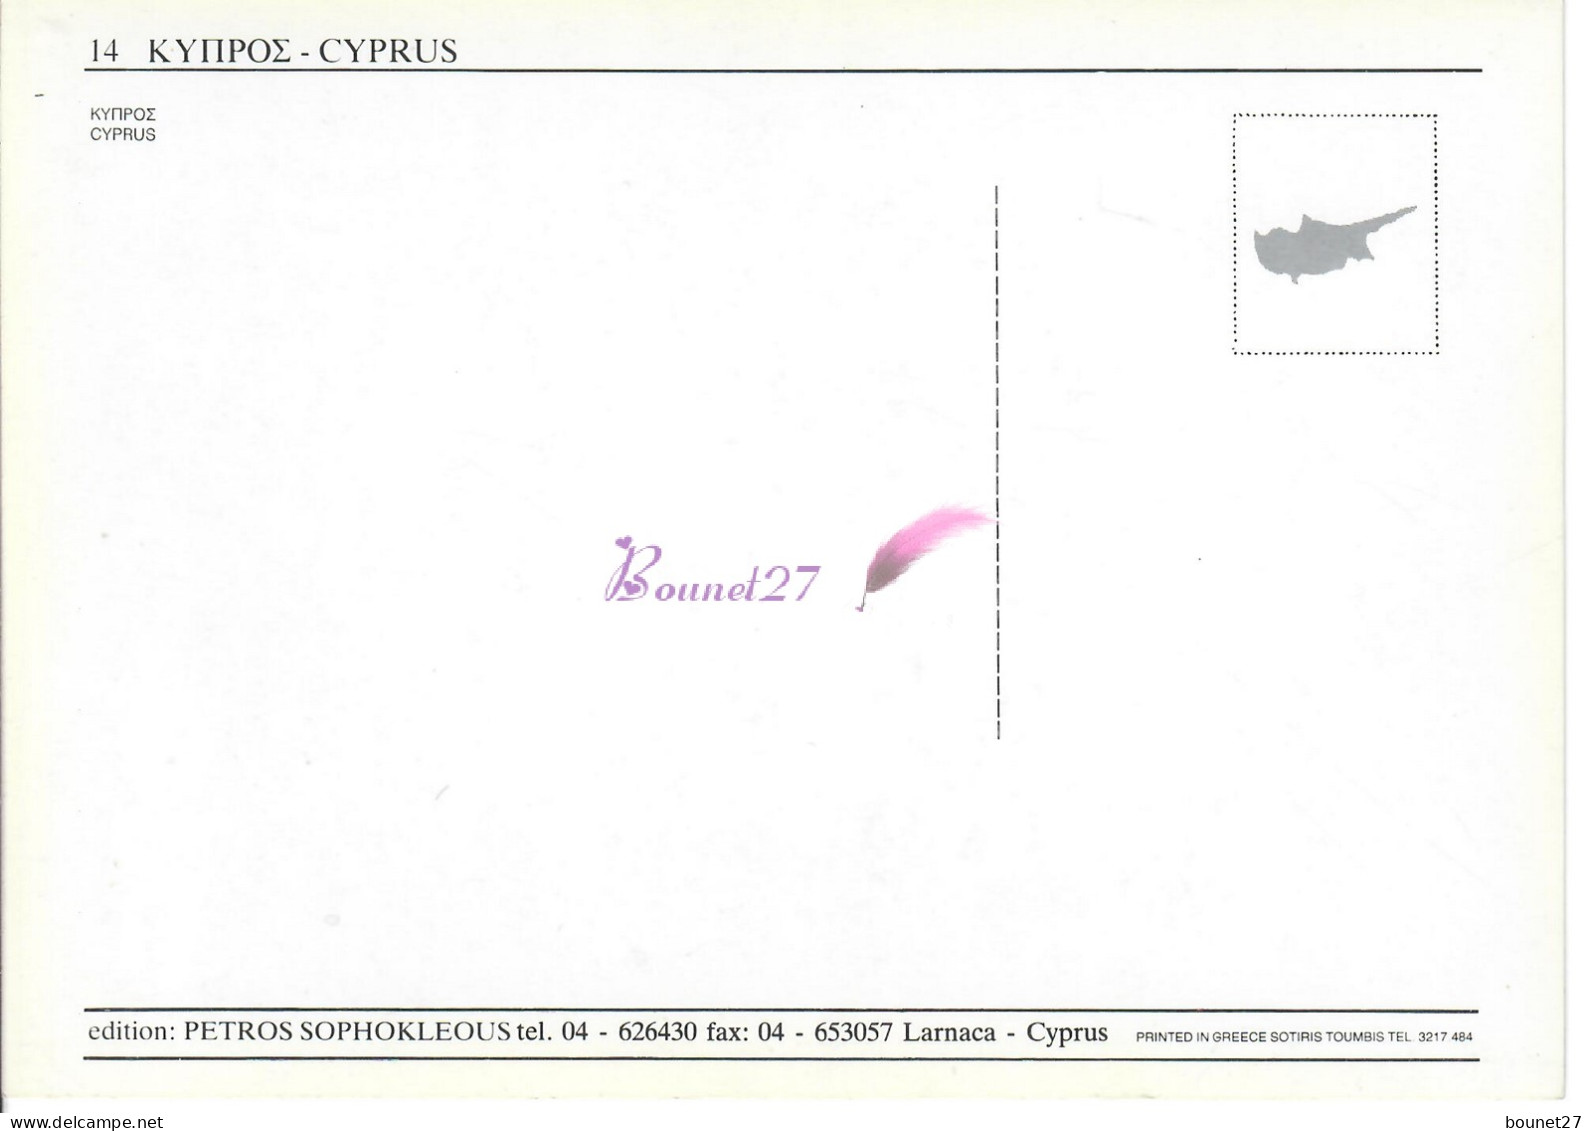 CP CHYPRE CYPRUS - Une Maison Typique Blanche Et Bleue Avec Ses Fleurs - Chypre